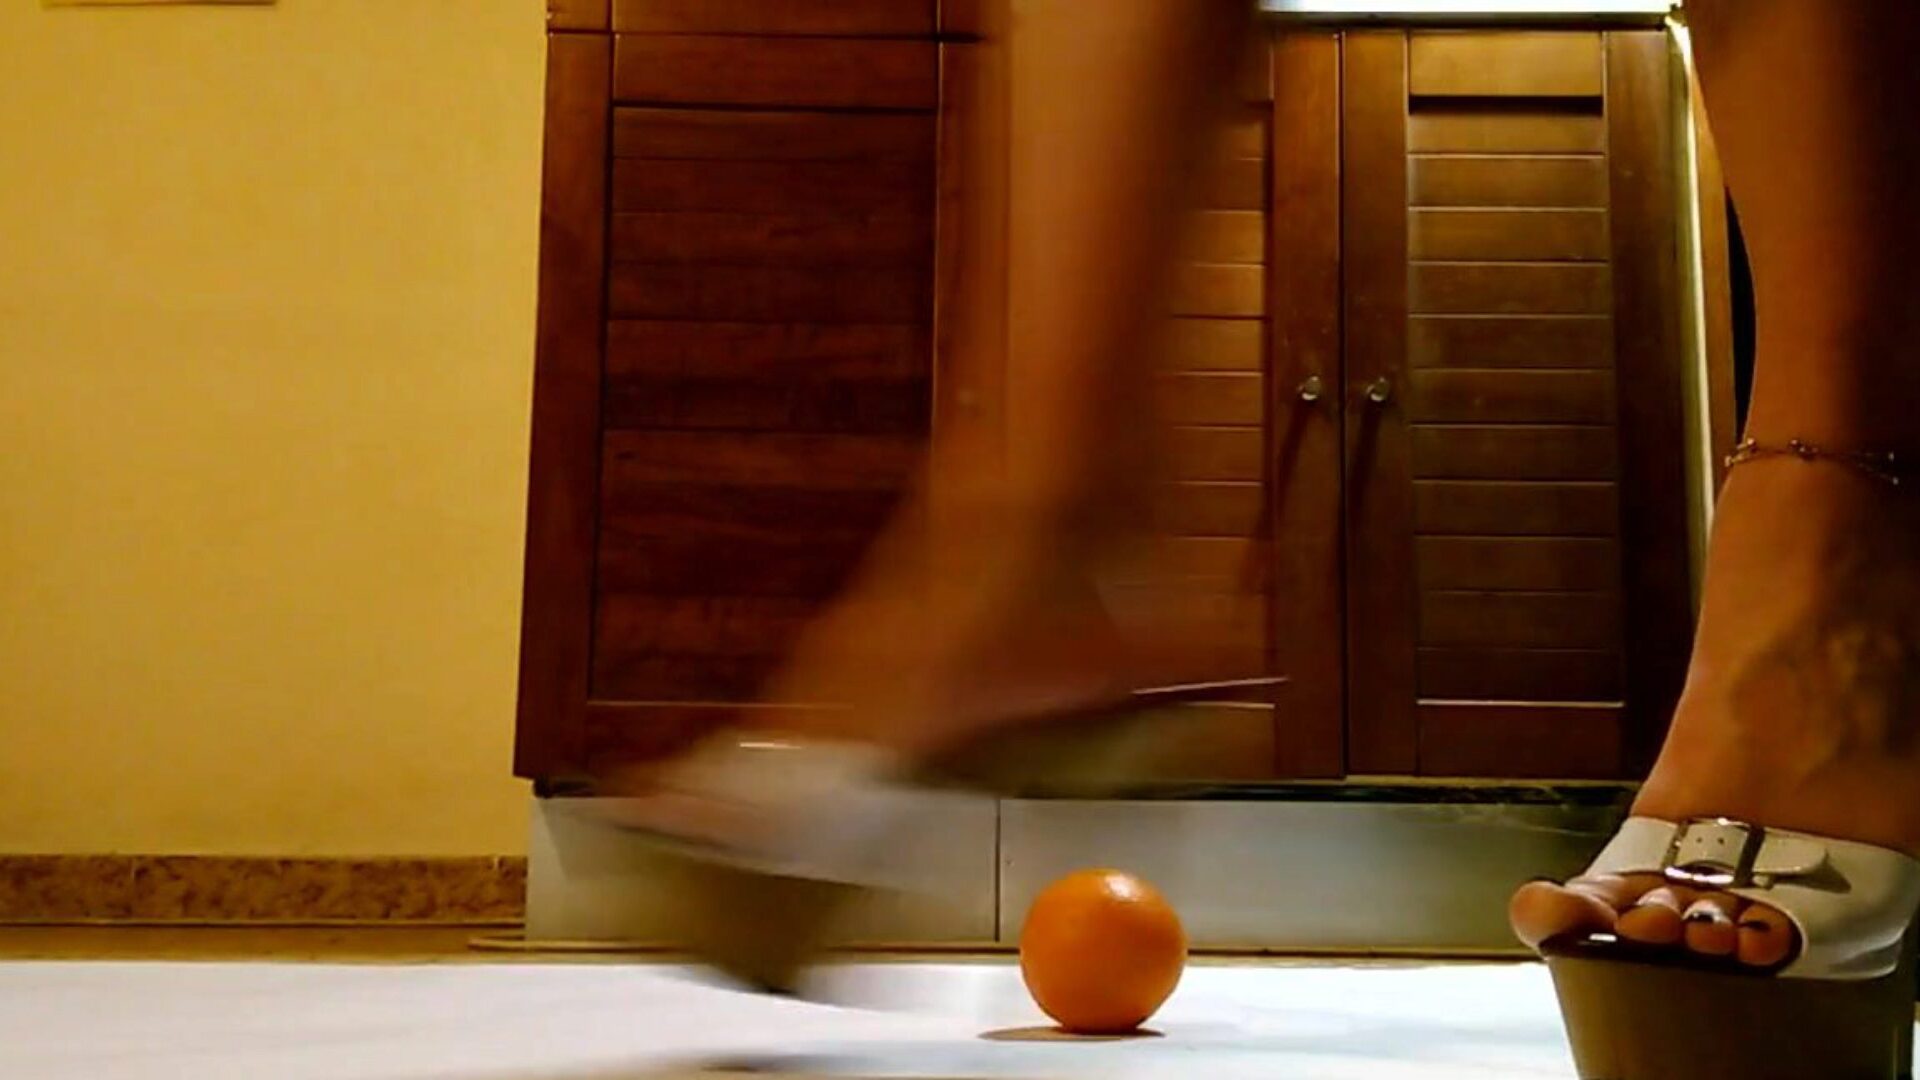 la camarera juega y golpea naranja con zapatos de tacón alto con plataforma Hawt La camarera se divierte y patea naranja con zapatos de tacón alto con plataforma sexy